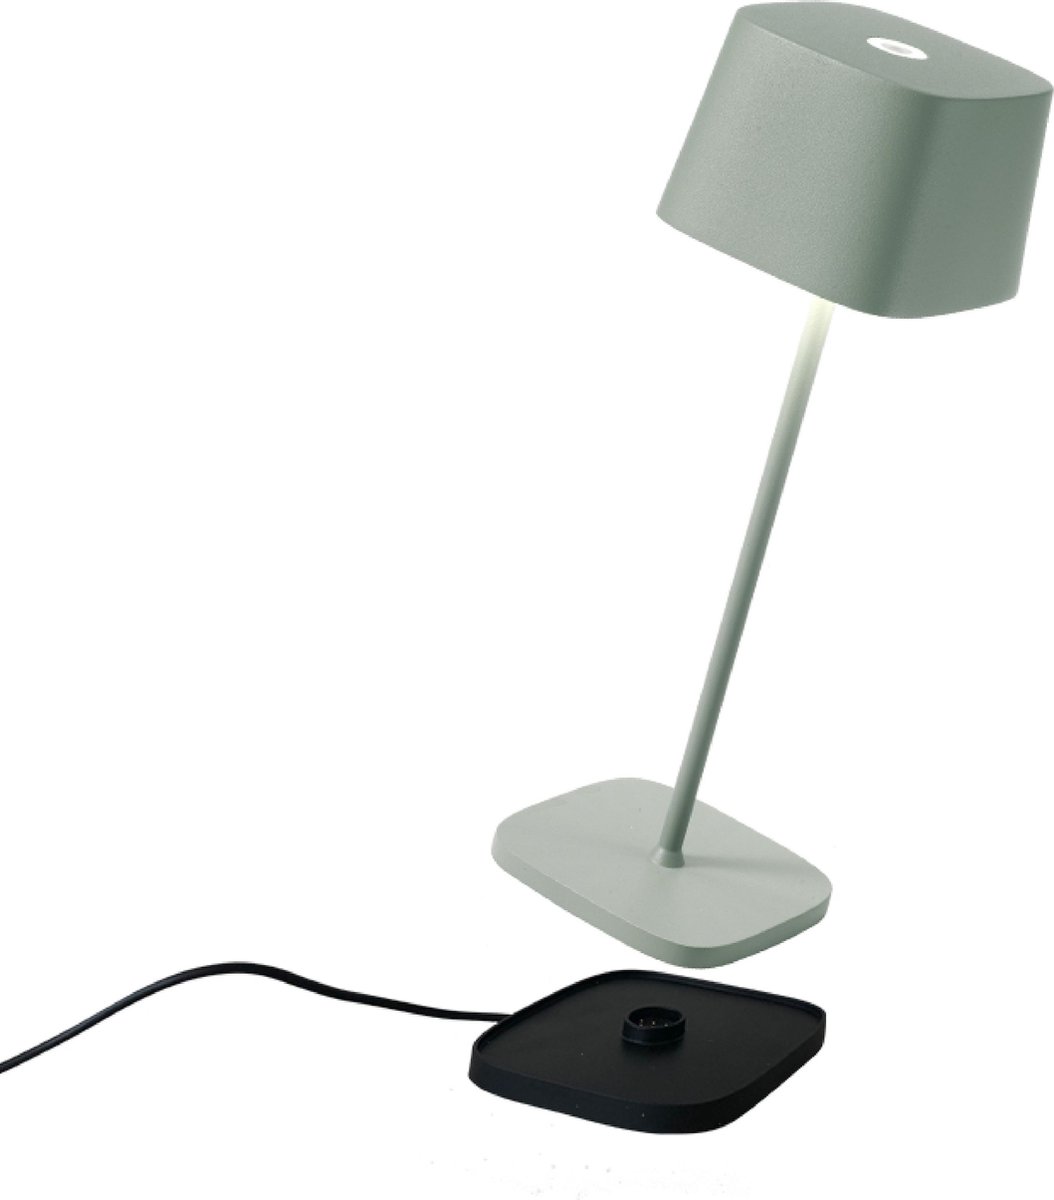 Zafferano - Ofelia MINI - Sage Groen - H30cm - Ledlamp - Bureaulamp – Tafellamp – Snoerloos – Verplaatsbaar – Duurzaam - Voor binnen en buiten – LED - Dimbaar - 3000K - IP65 Spat Waterdicht - USB oplaadbaar